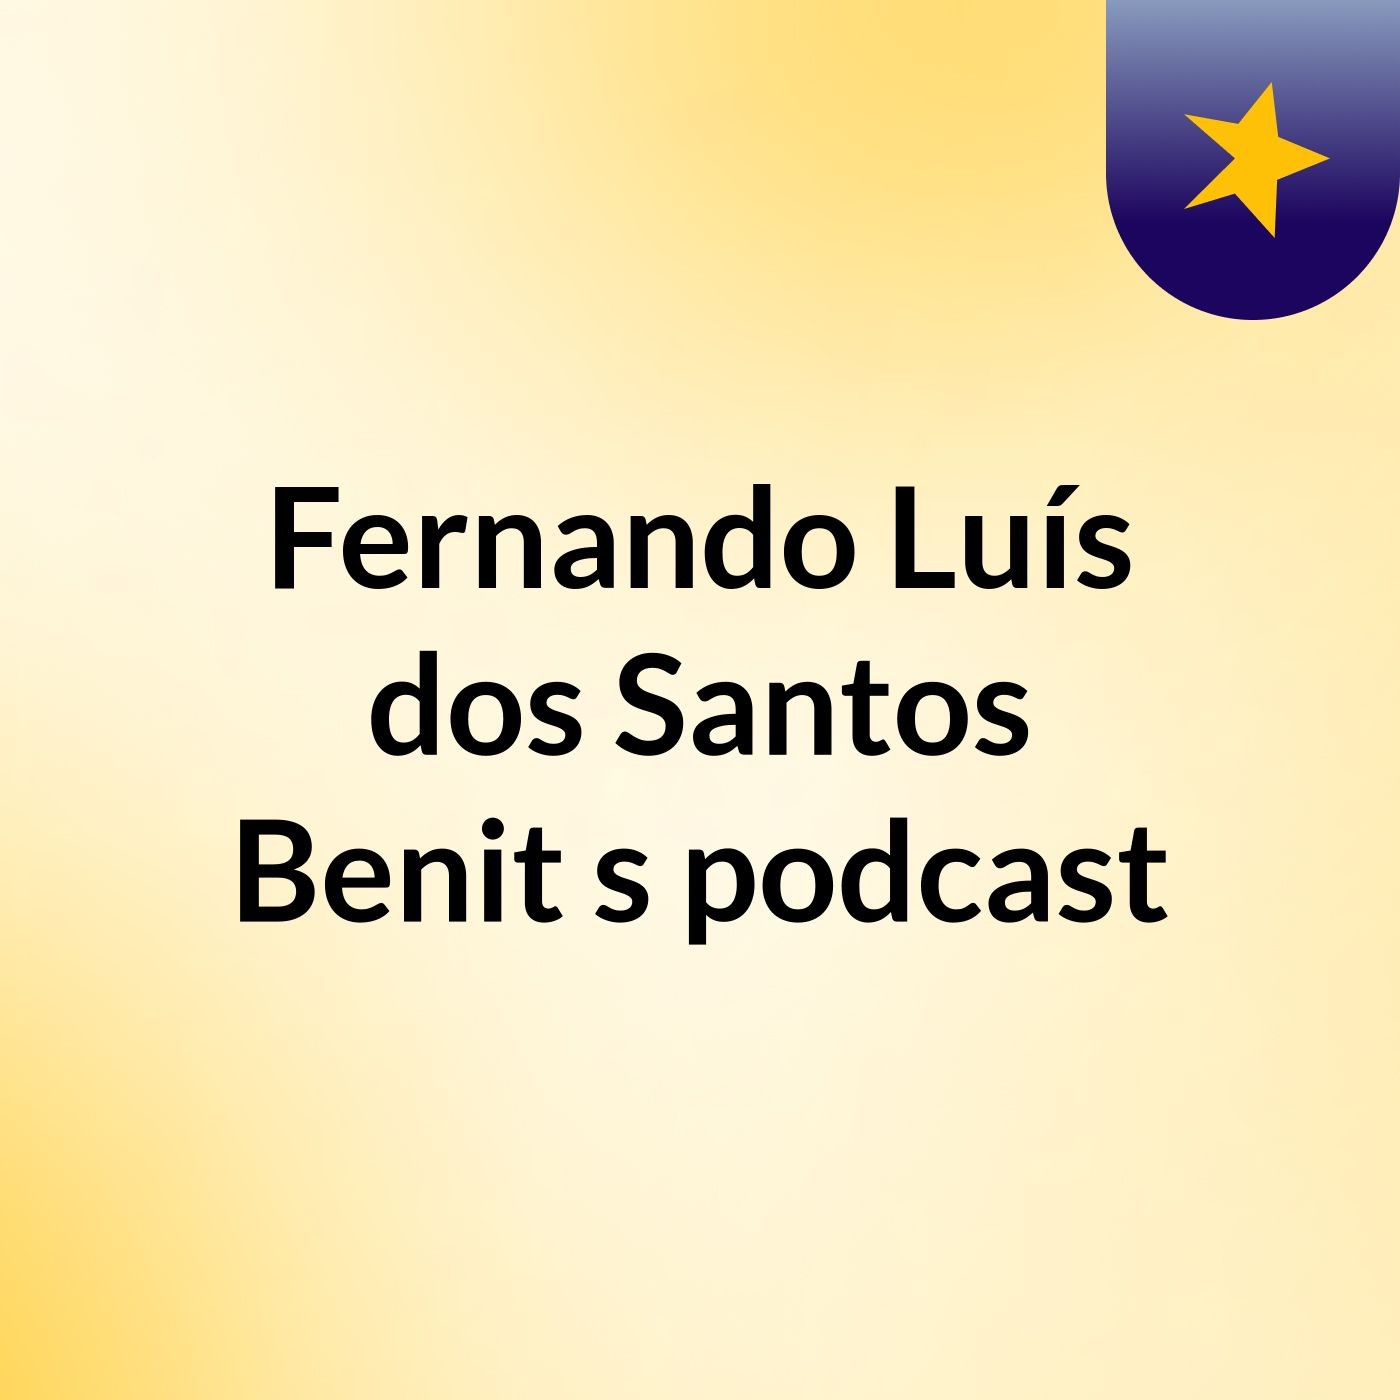 Fernando Luís dos Santos Benit's podcast